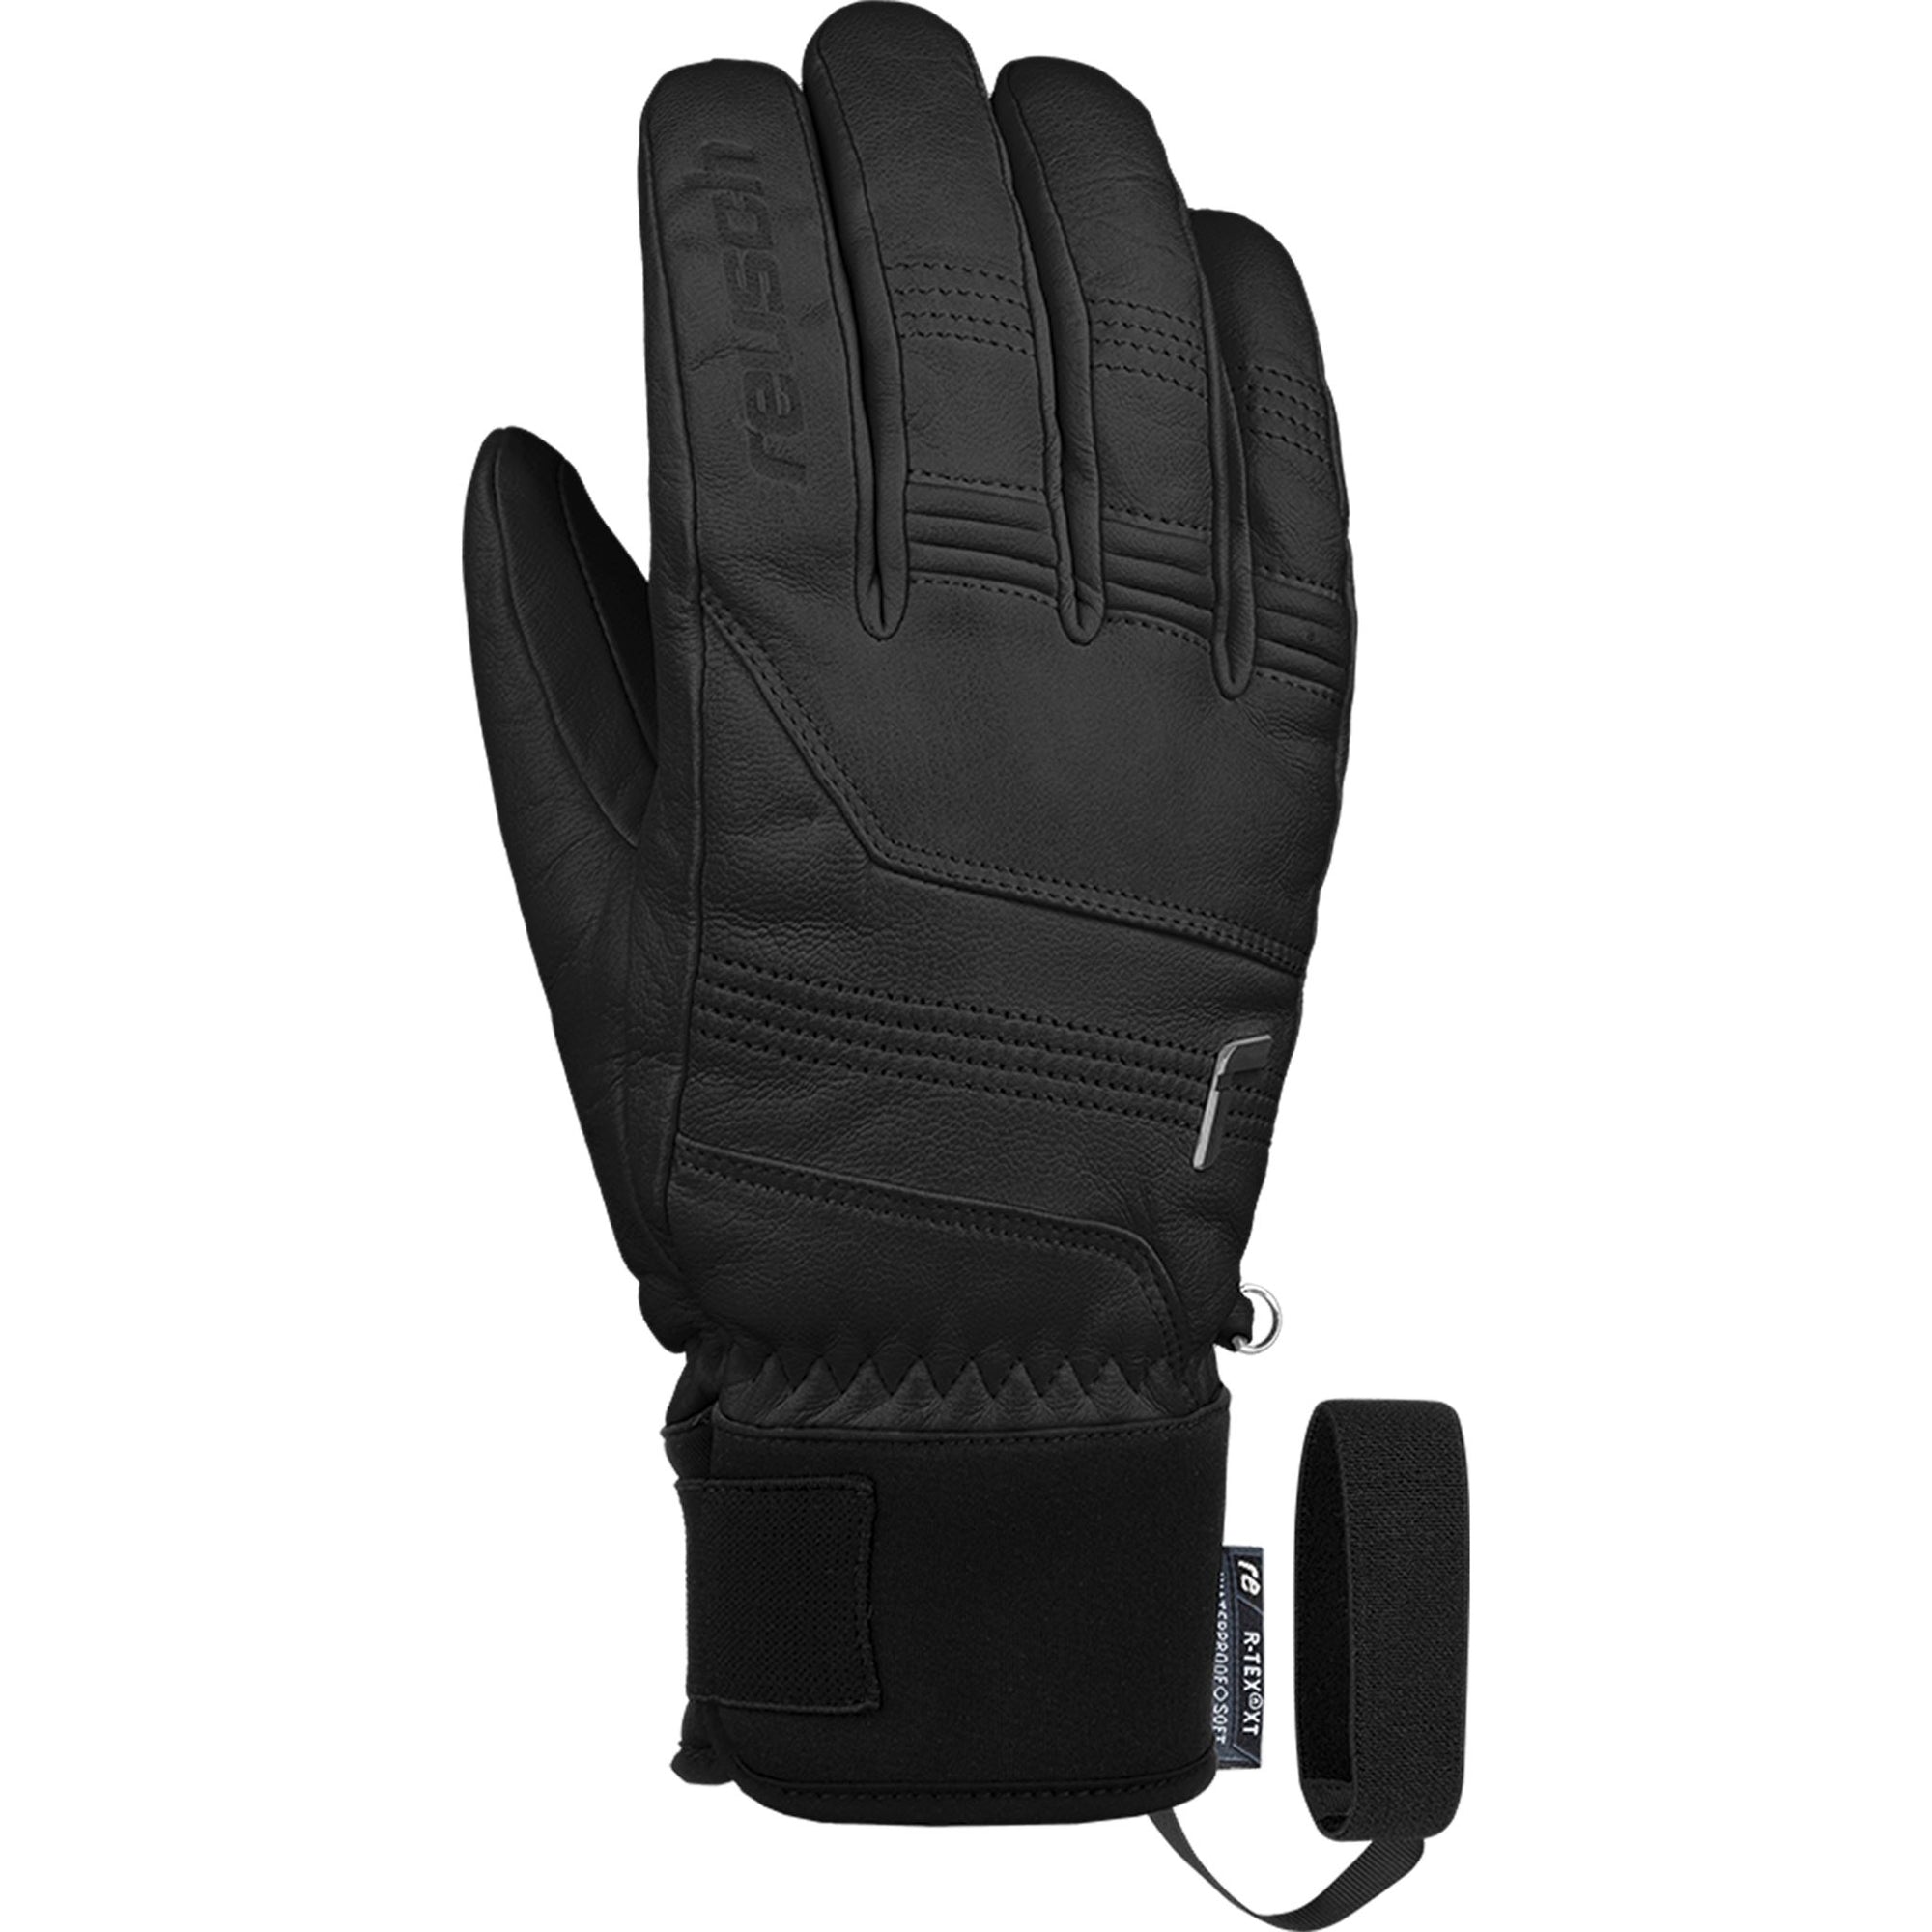 Mens Reusch Highland R-Tex Glove - Black Gloves Reusch S-M / 8.5 